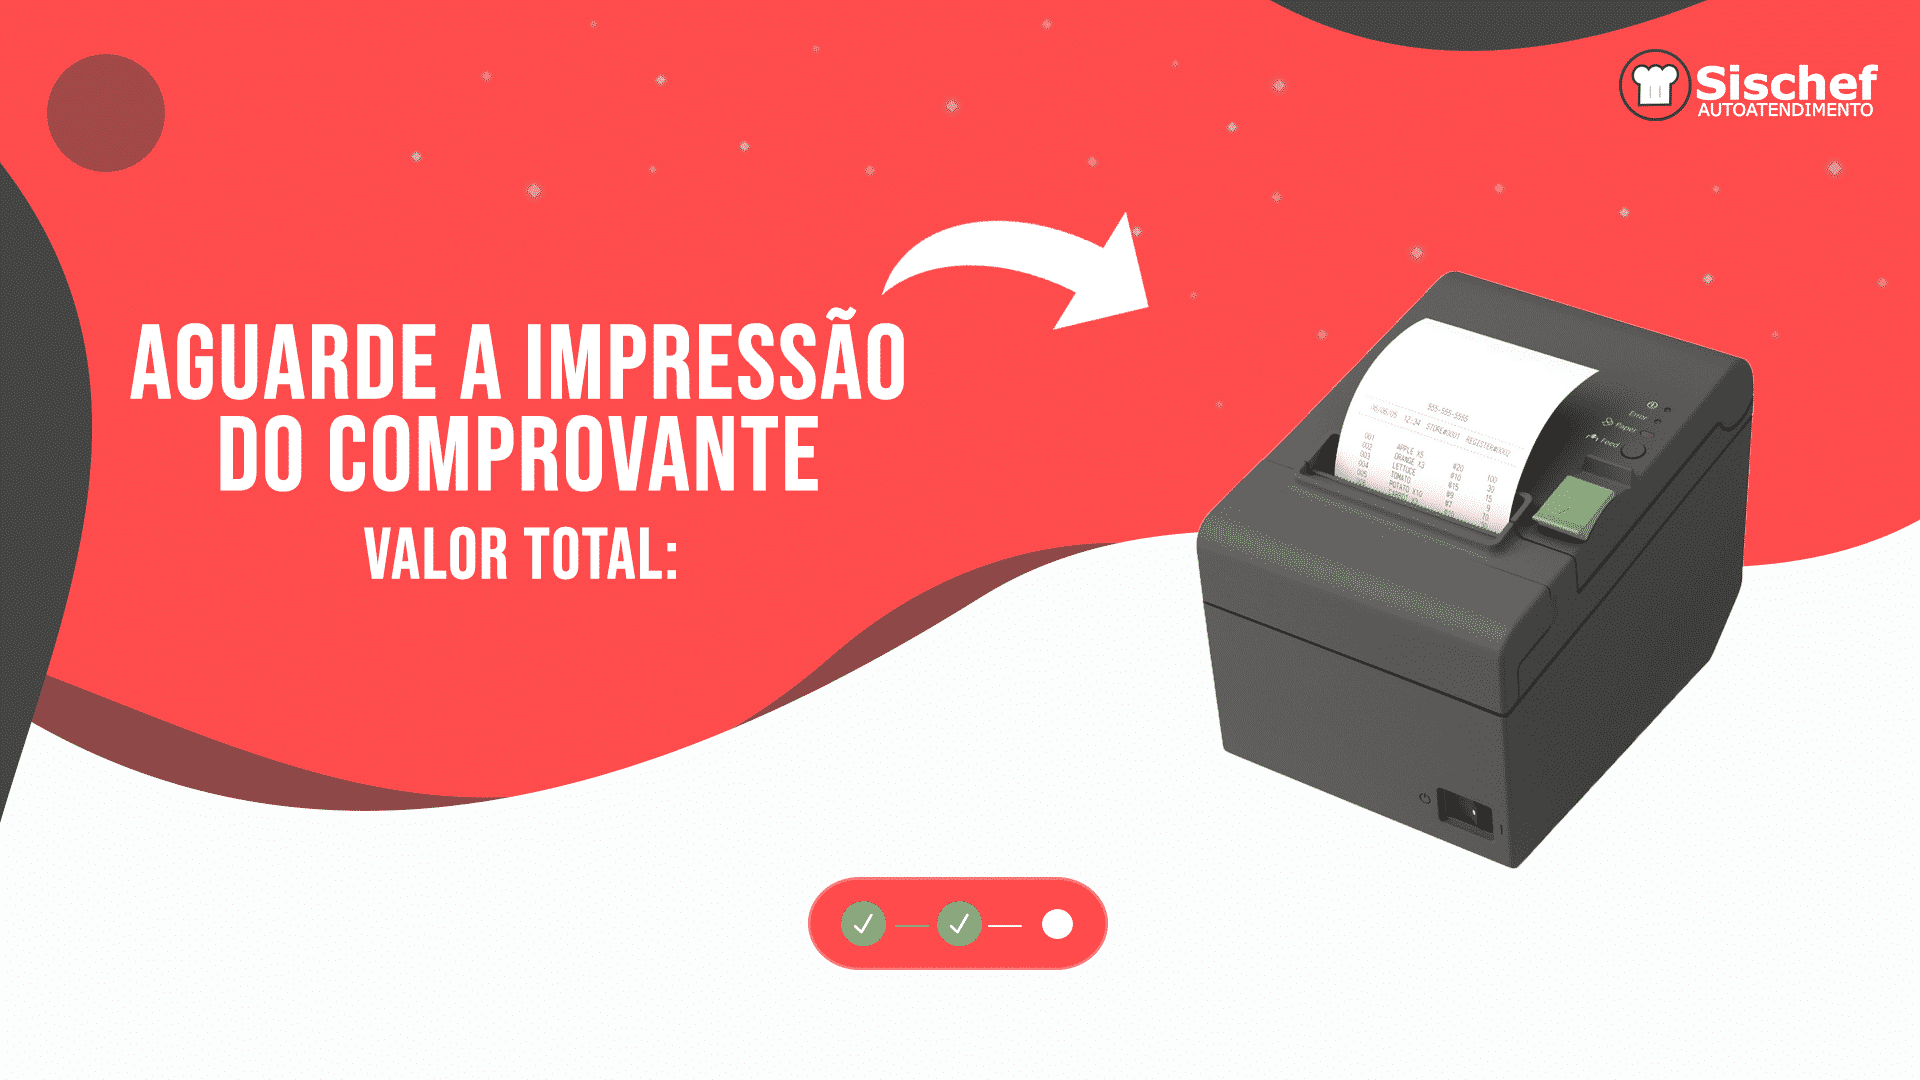 autoatendimento- tela vermelha com a imagem de uma impressora explicando que você deve aguardar a impressão do comprovante 